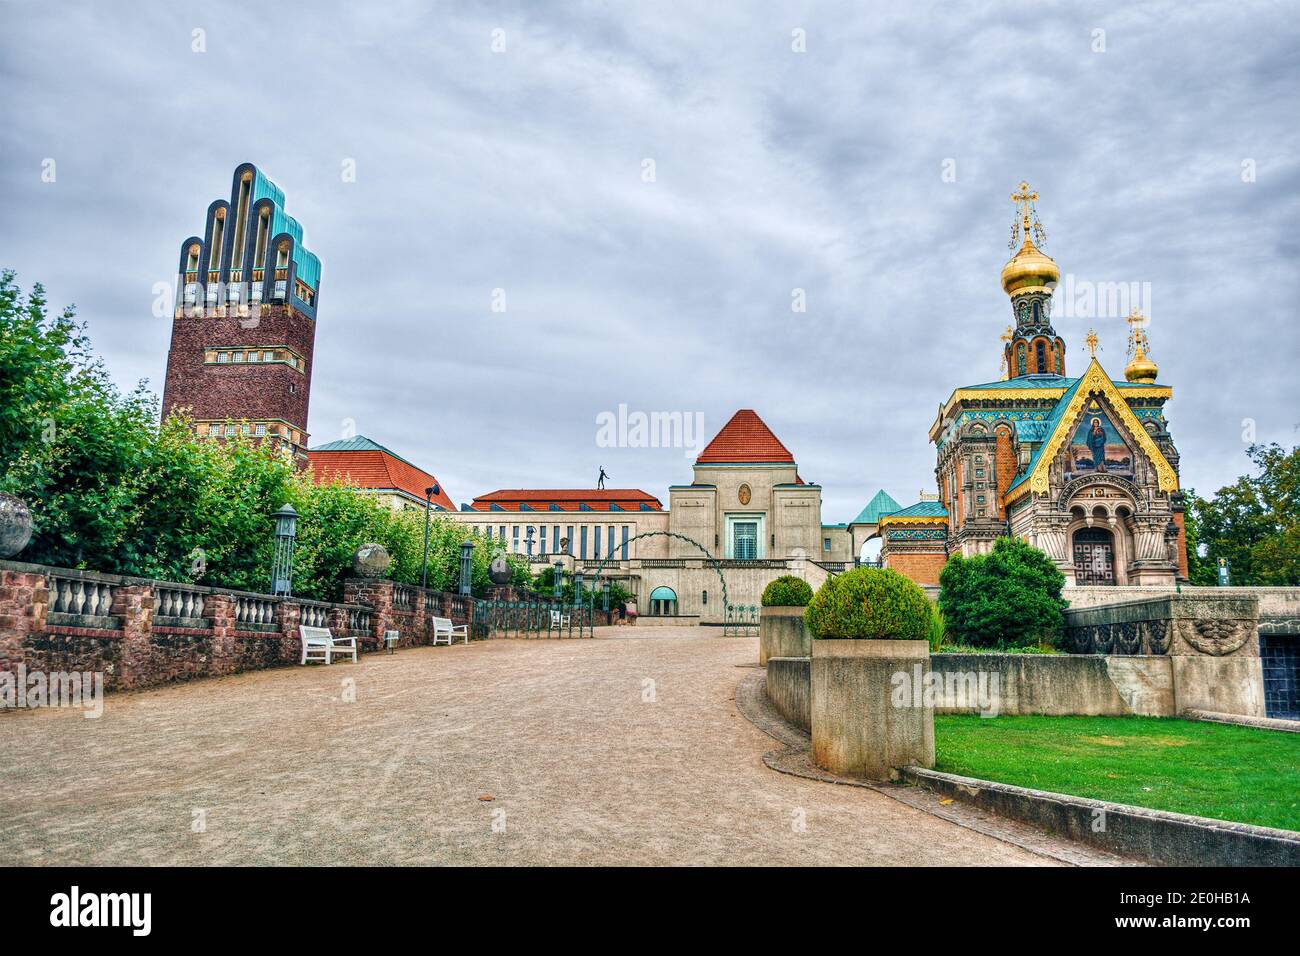 Mathildenhohe a Darmstadt (Germania) con la torre di nozze e un chiesa ortodossa russa Foto Stock